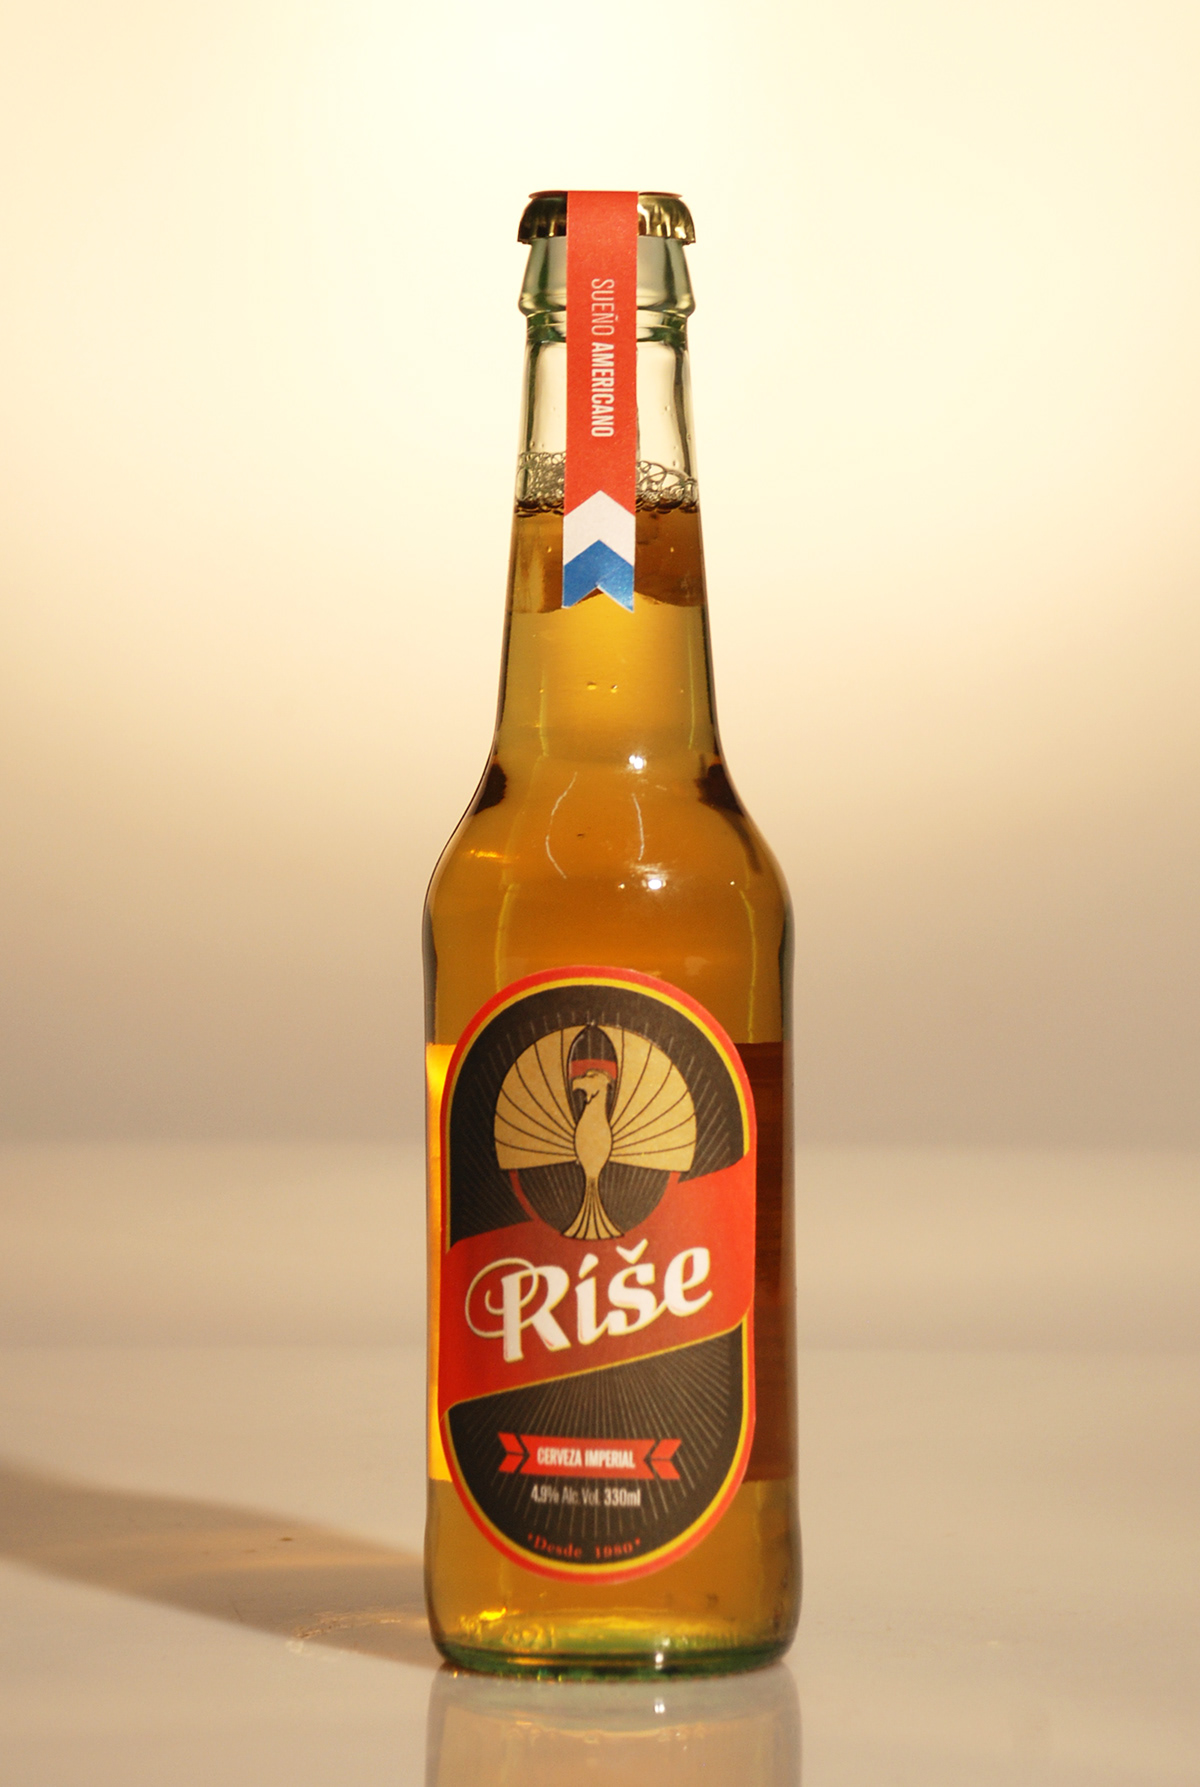 rise beer craft japan germany usa cerveza artesanal alemania estados unidos power strength red gold